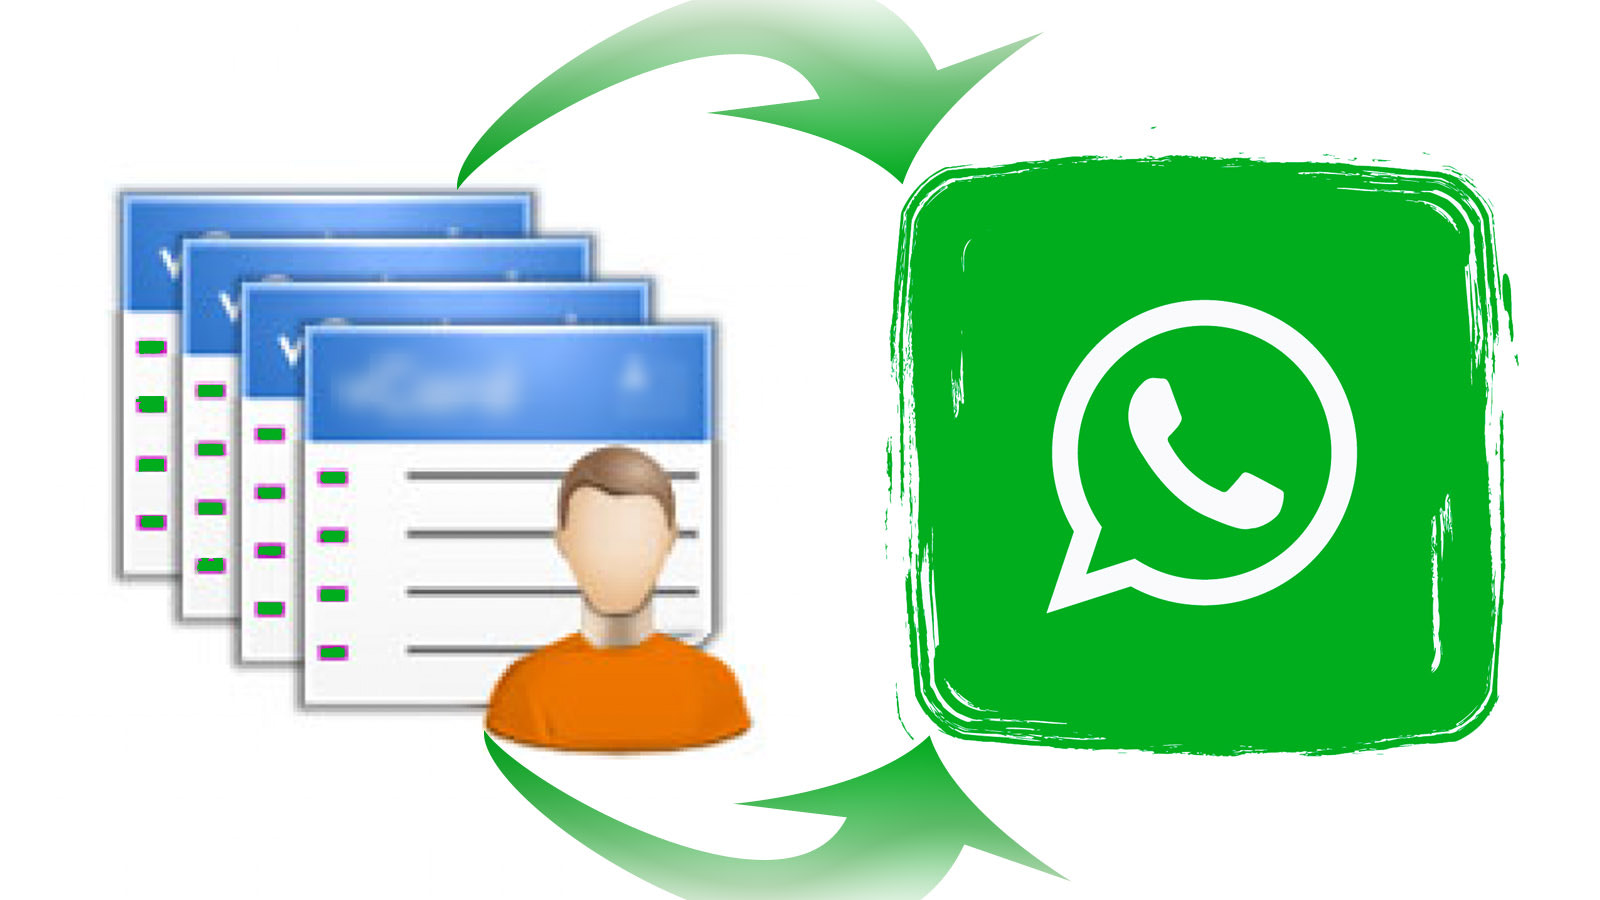 Transferir usuários para o whatsapp e grupos de whatsapp.